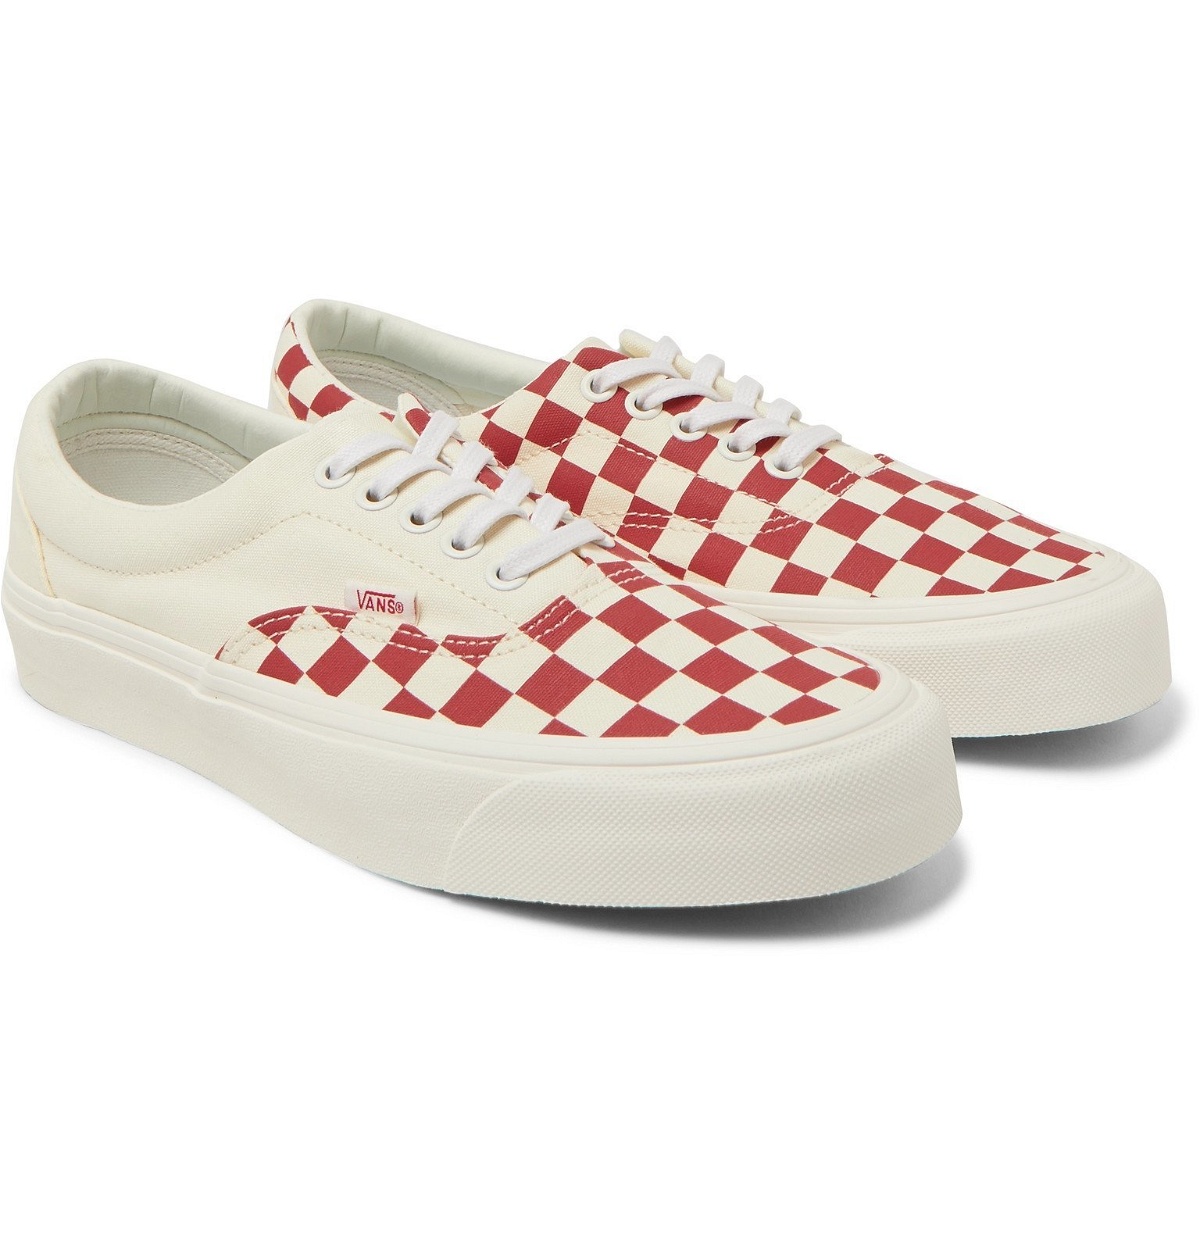 Sluier Conform Junior Vans - Era Checkerboard Canvas Sneakers - Red Vans